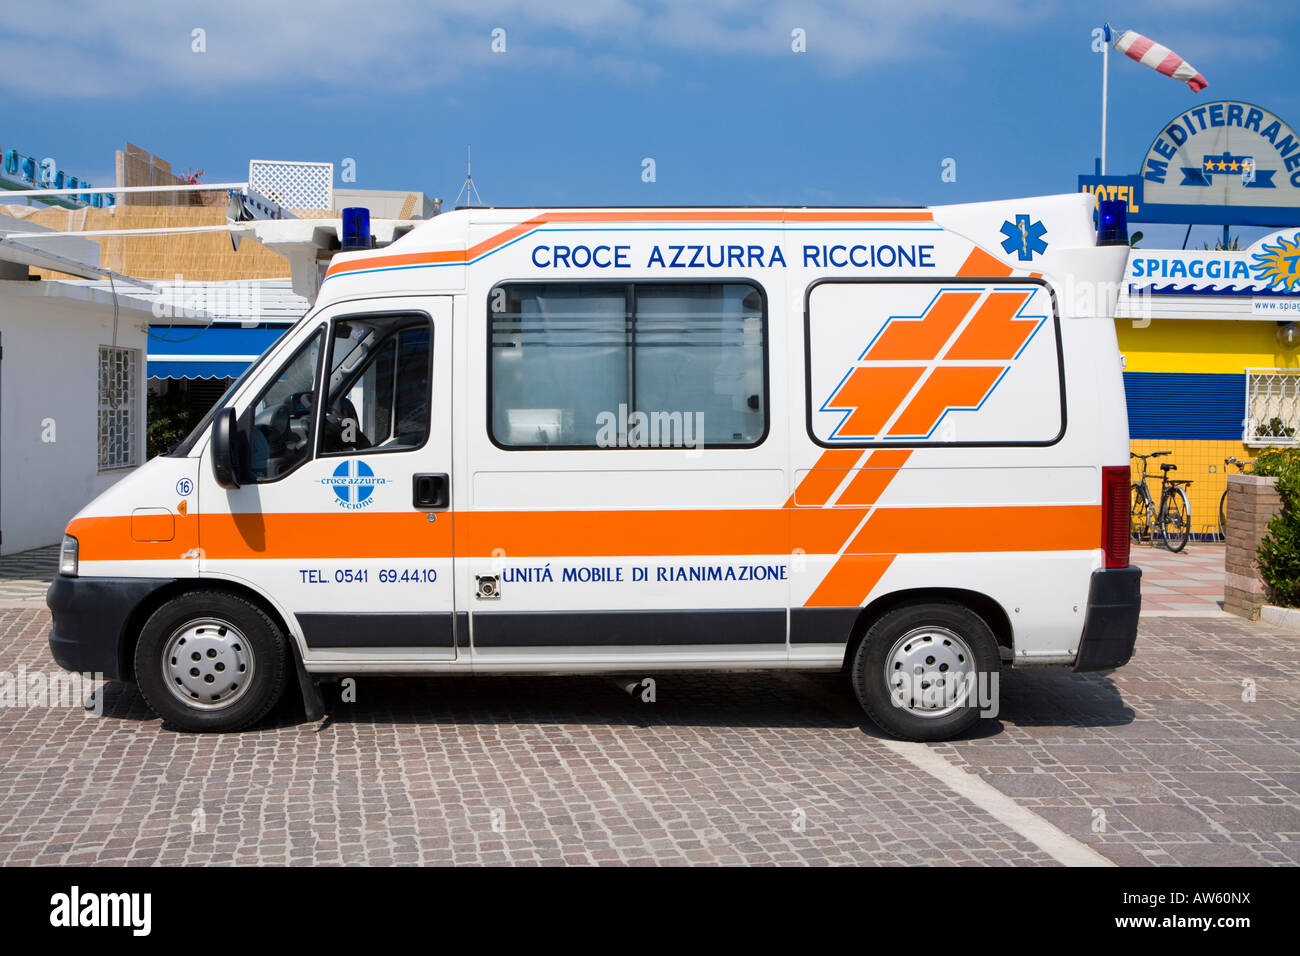 Blue cross ambulance immagini e fotografie stock ad alta risoluzione - Alamy